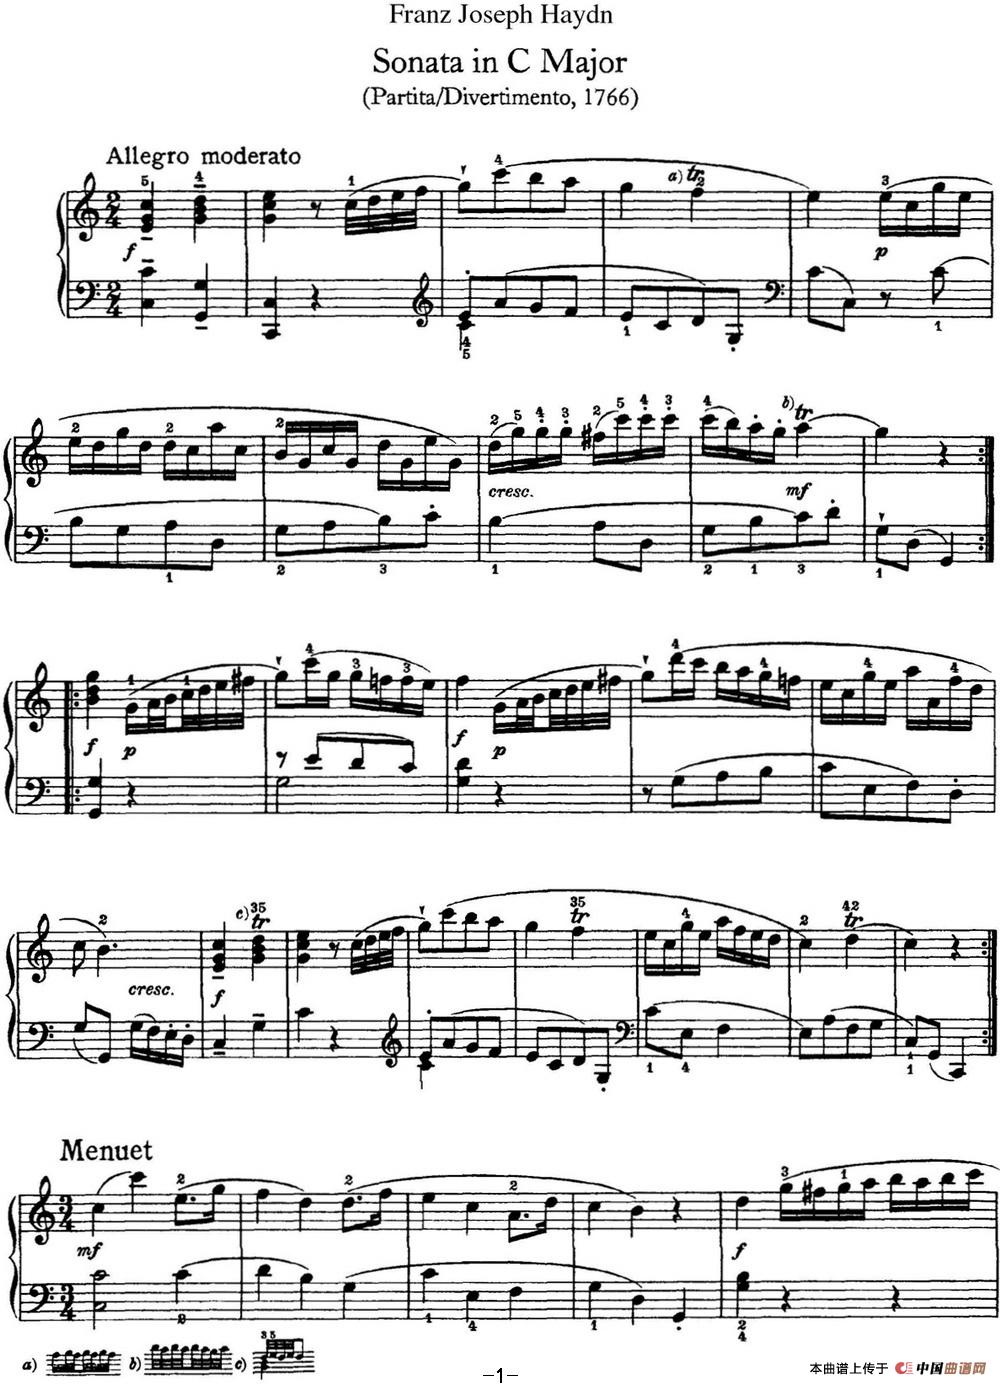 《海顿 钢琴奏鸣曲 Hob XVI 7 Divertimento C major》钢琴曲谱图分享